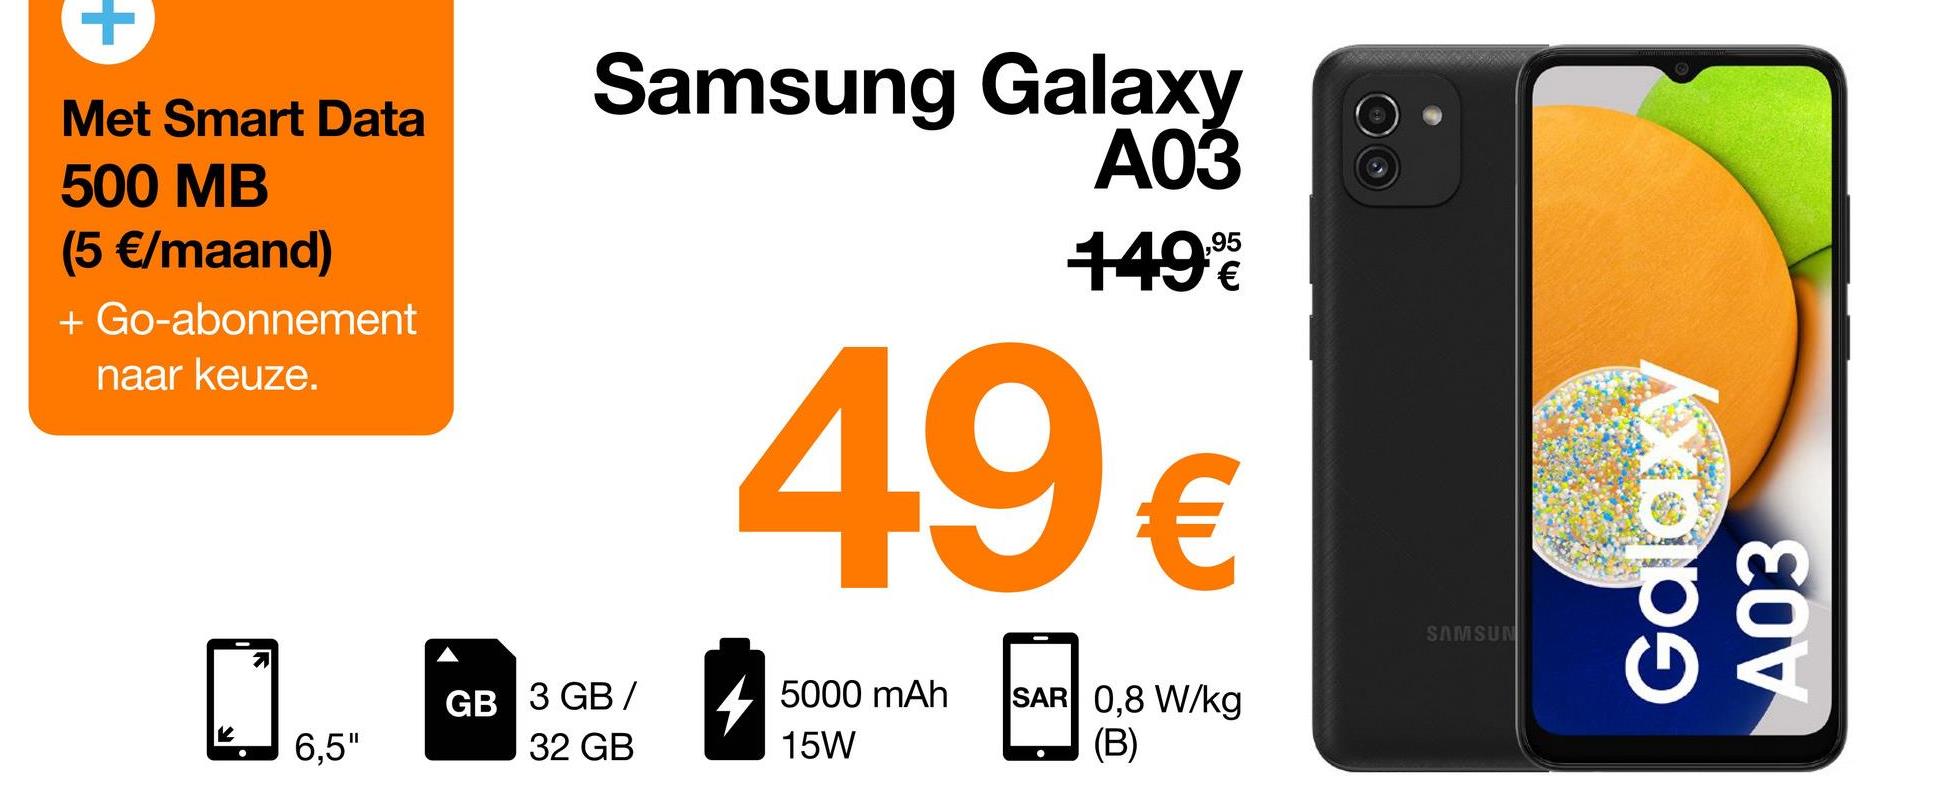 +
Met Smart Data
500 MB
(5 €/maand)
+ Go-abonnement
naar keuze.
Samsung Galaxy
A03
1496
49€
Galaxy
A03
SAMSUN
GB 3 GB /
5000 mAh
15W
SAR 0,8 W/kg
(B)
6,5"
32 GB
